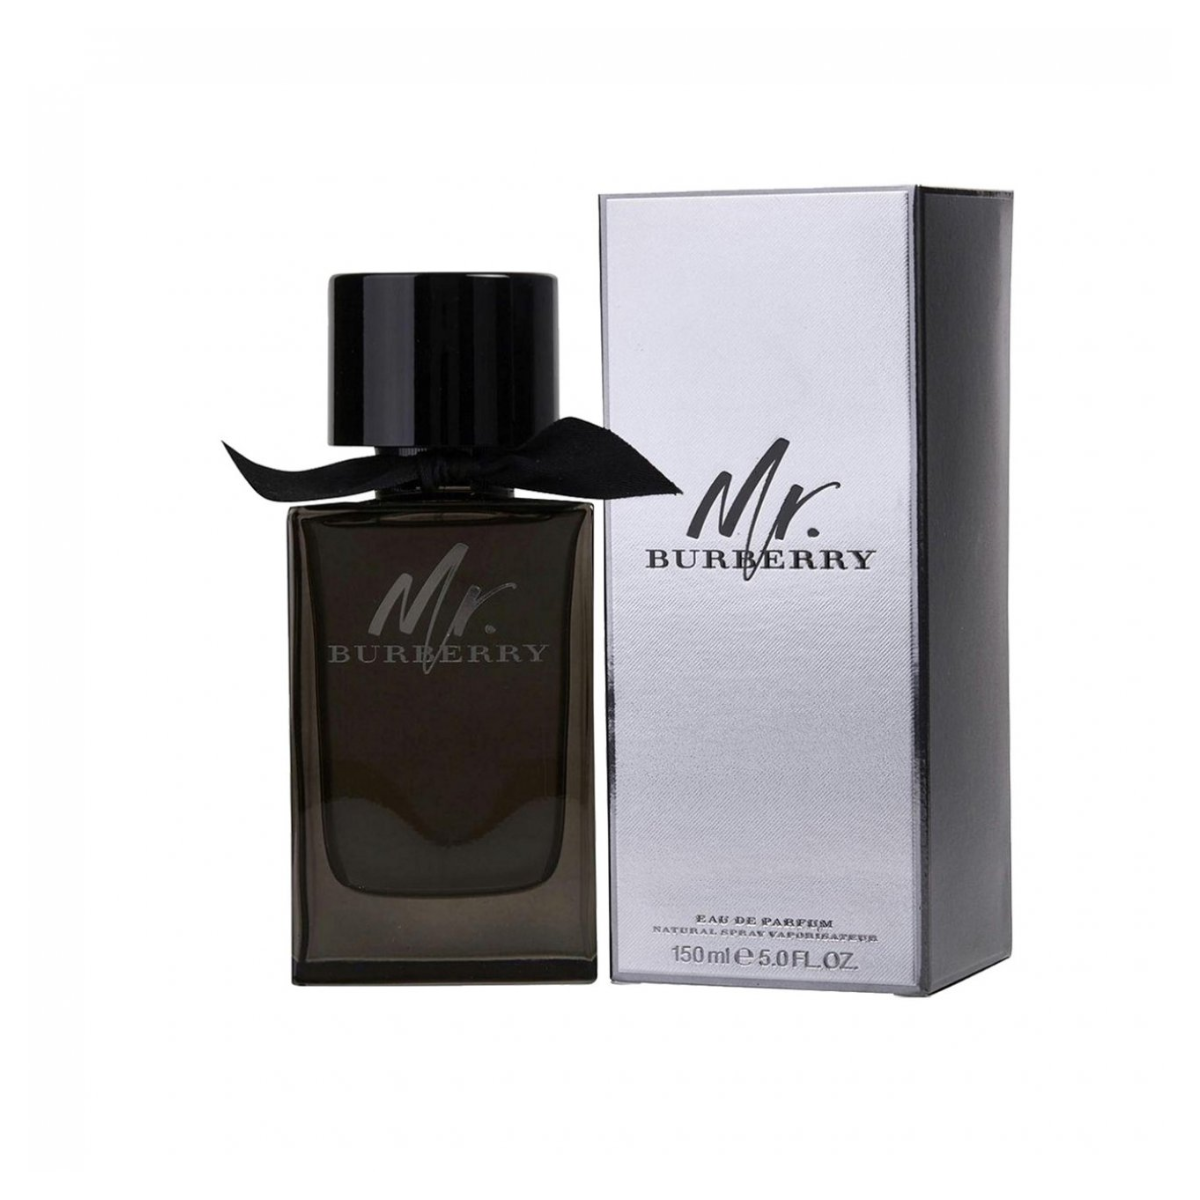 Burberry Mr Burberry Eau De Parfum